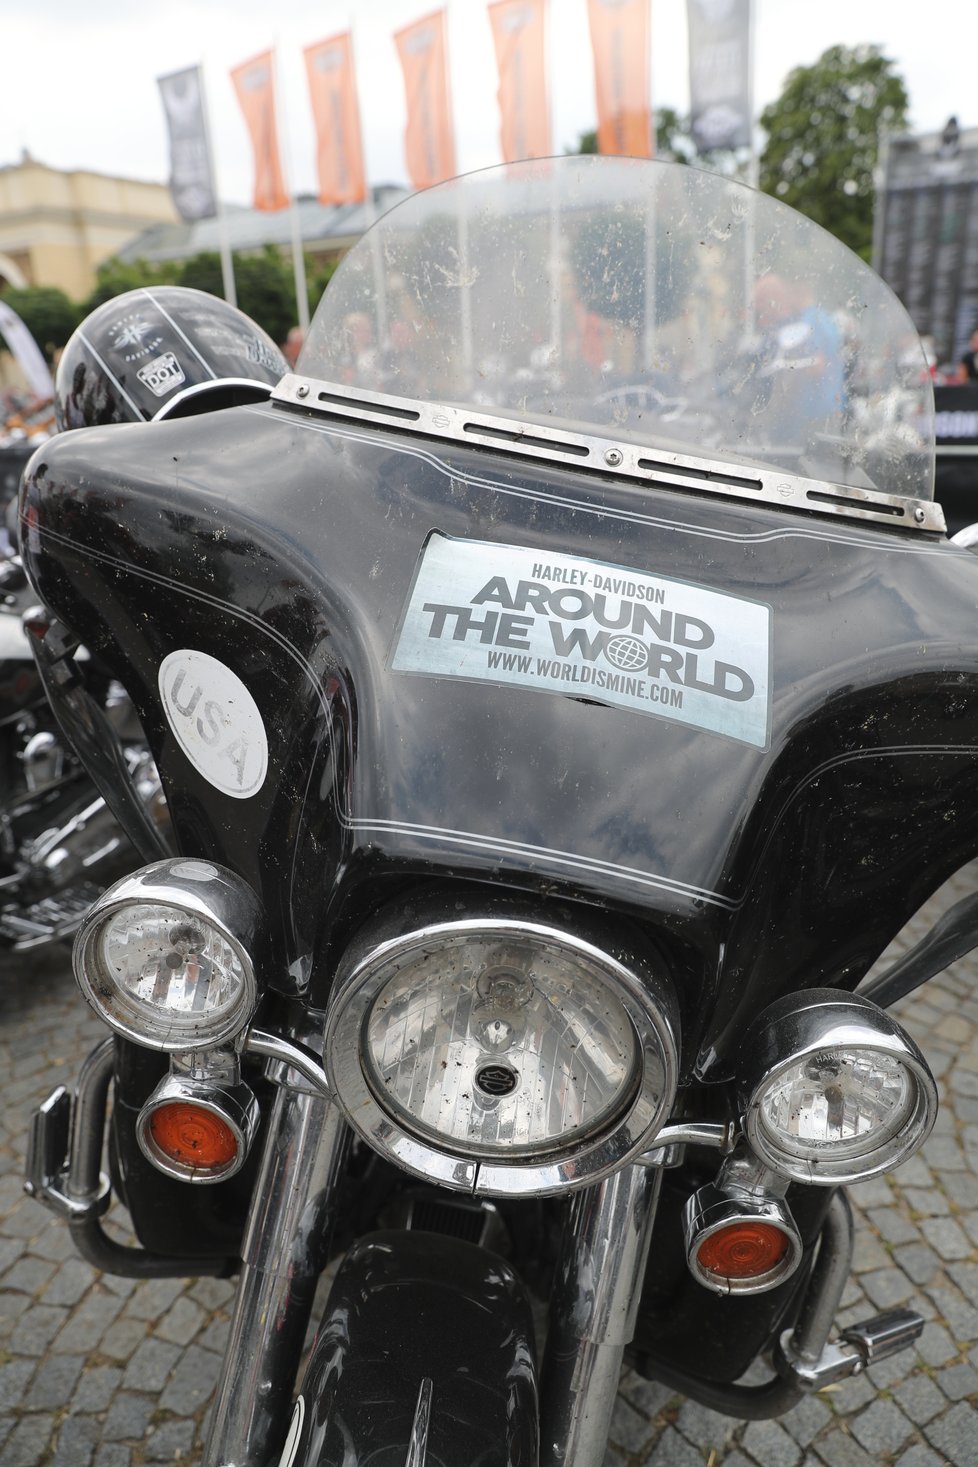 Oslavy Harley-Davidson v Praze se vydařily. Z výnosů poputuje nemalá částka i do pokladny hlavního města. (ilustrační foto)